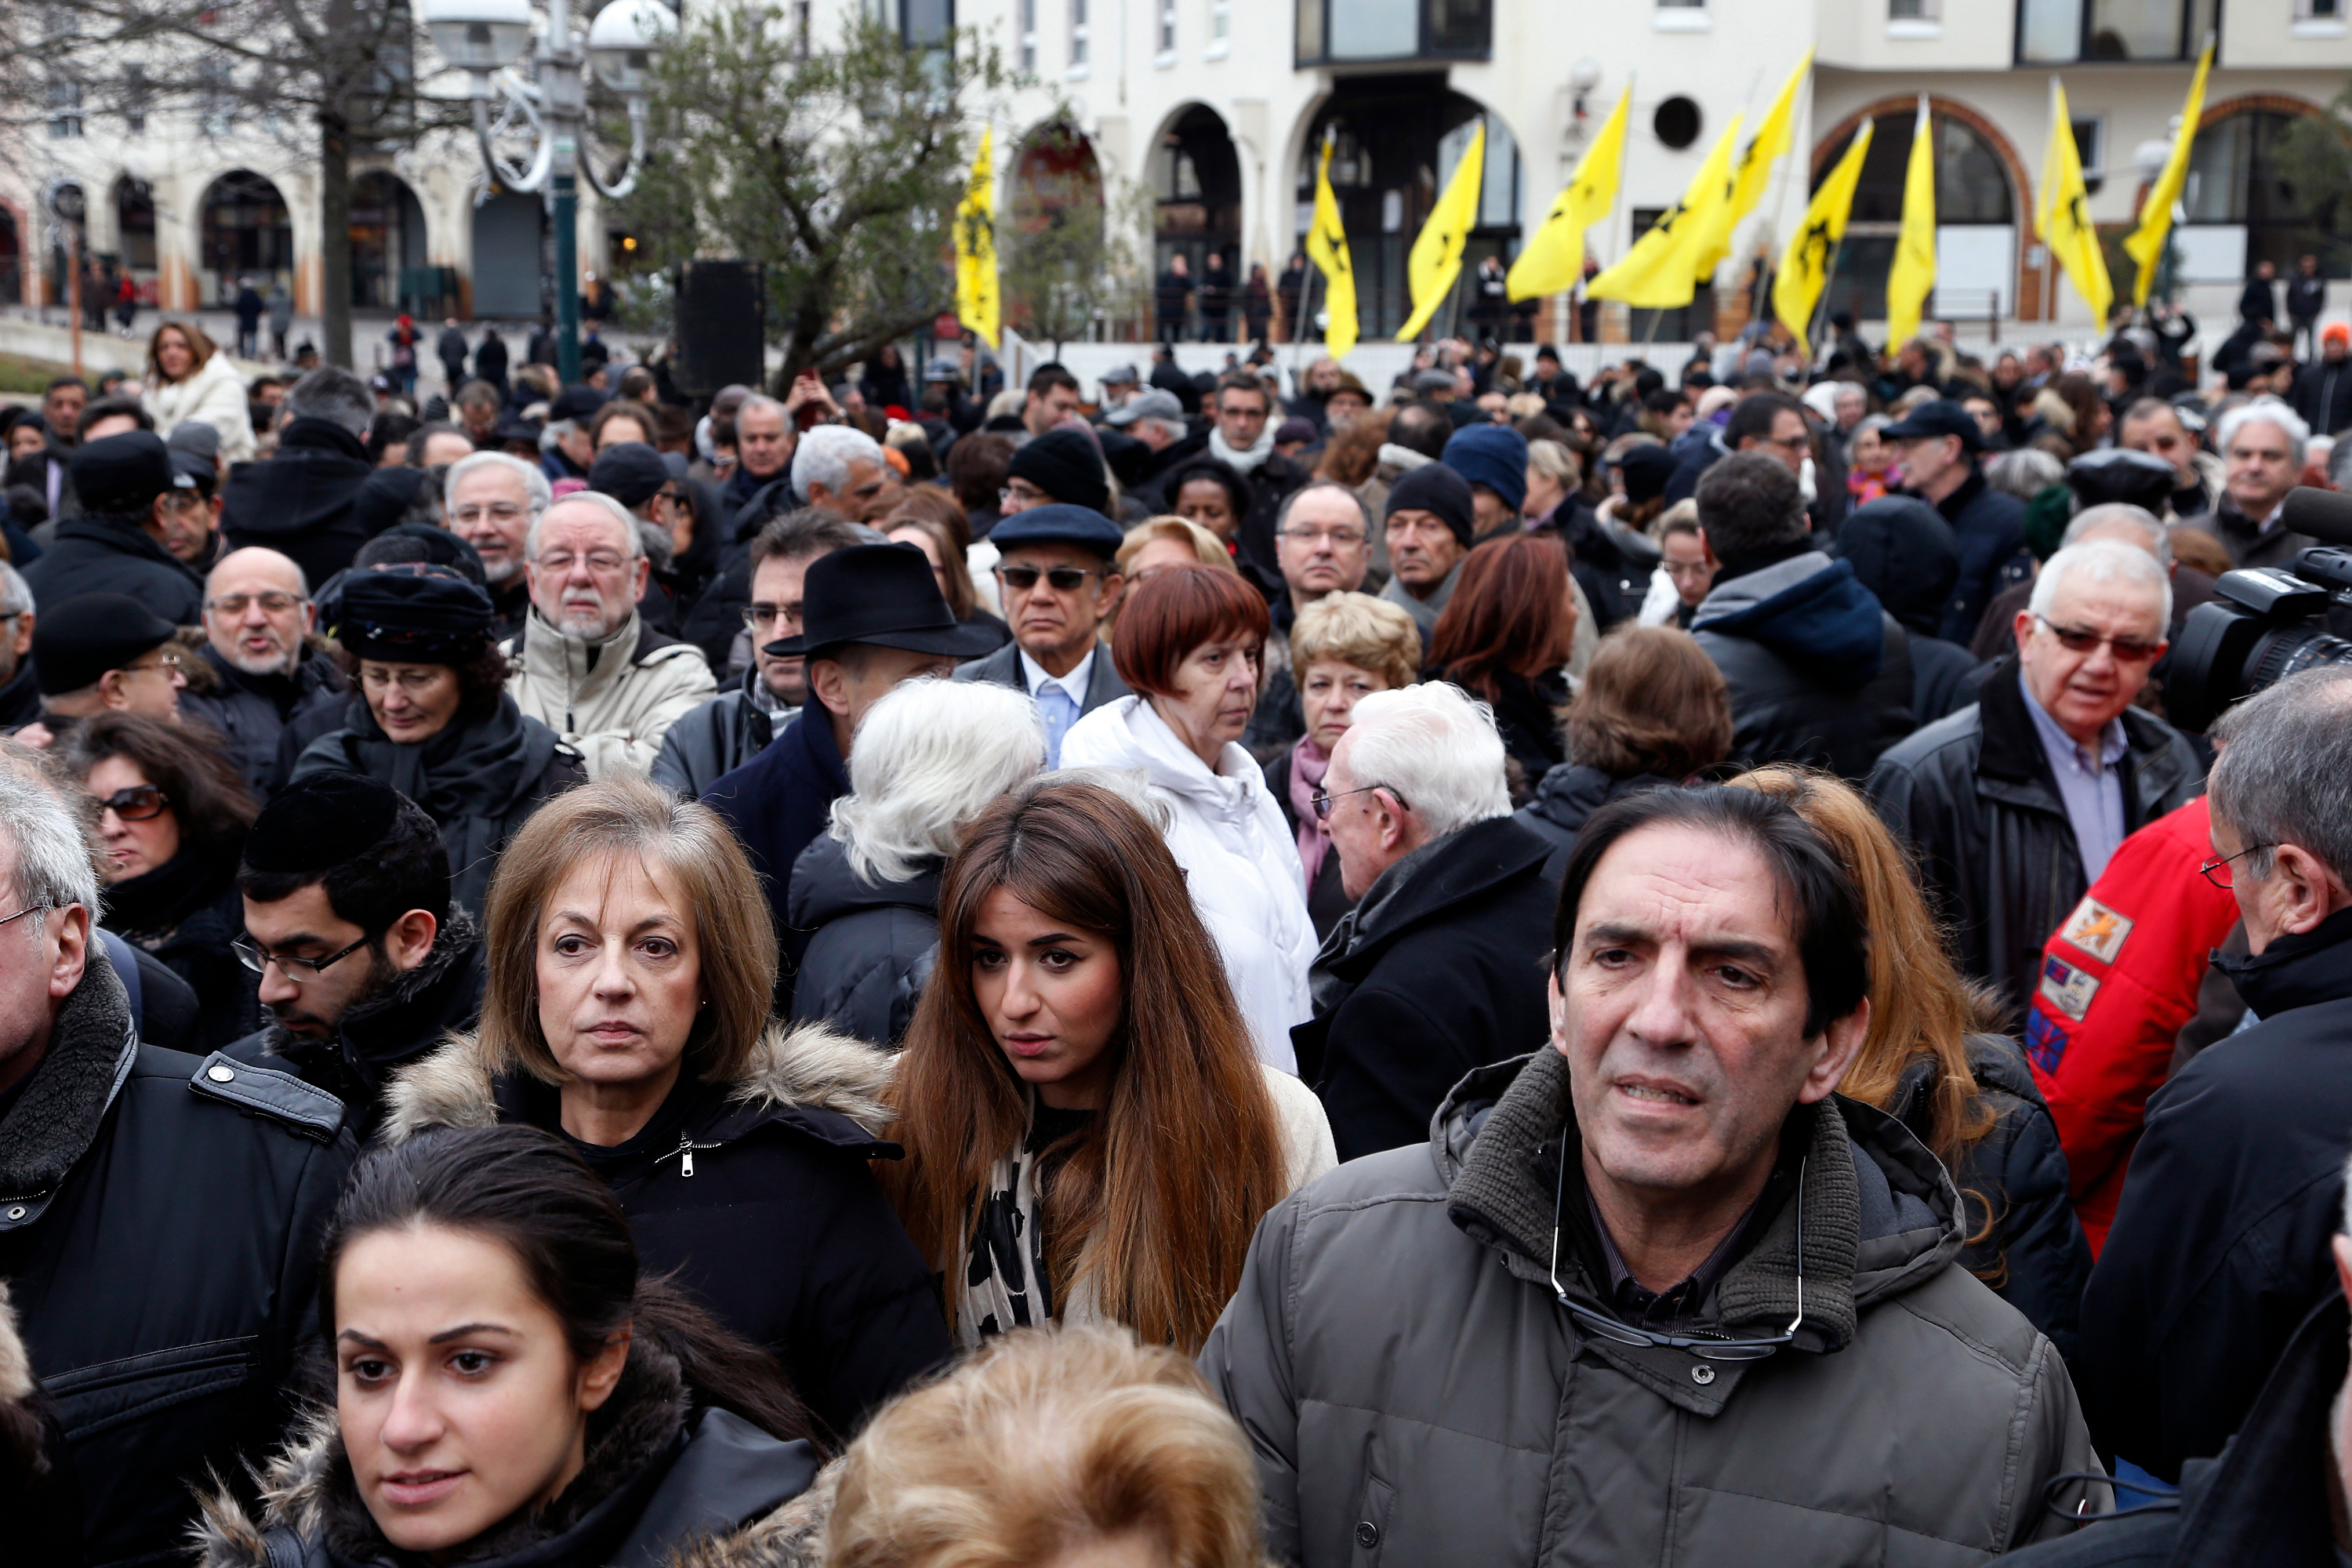 Franceses se reuniram neste domingo para protestar contra violência e antissemitismo
 